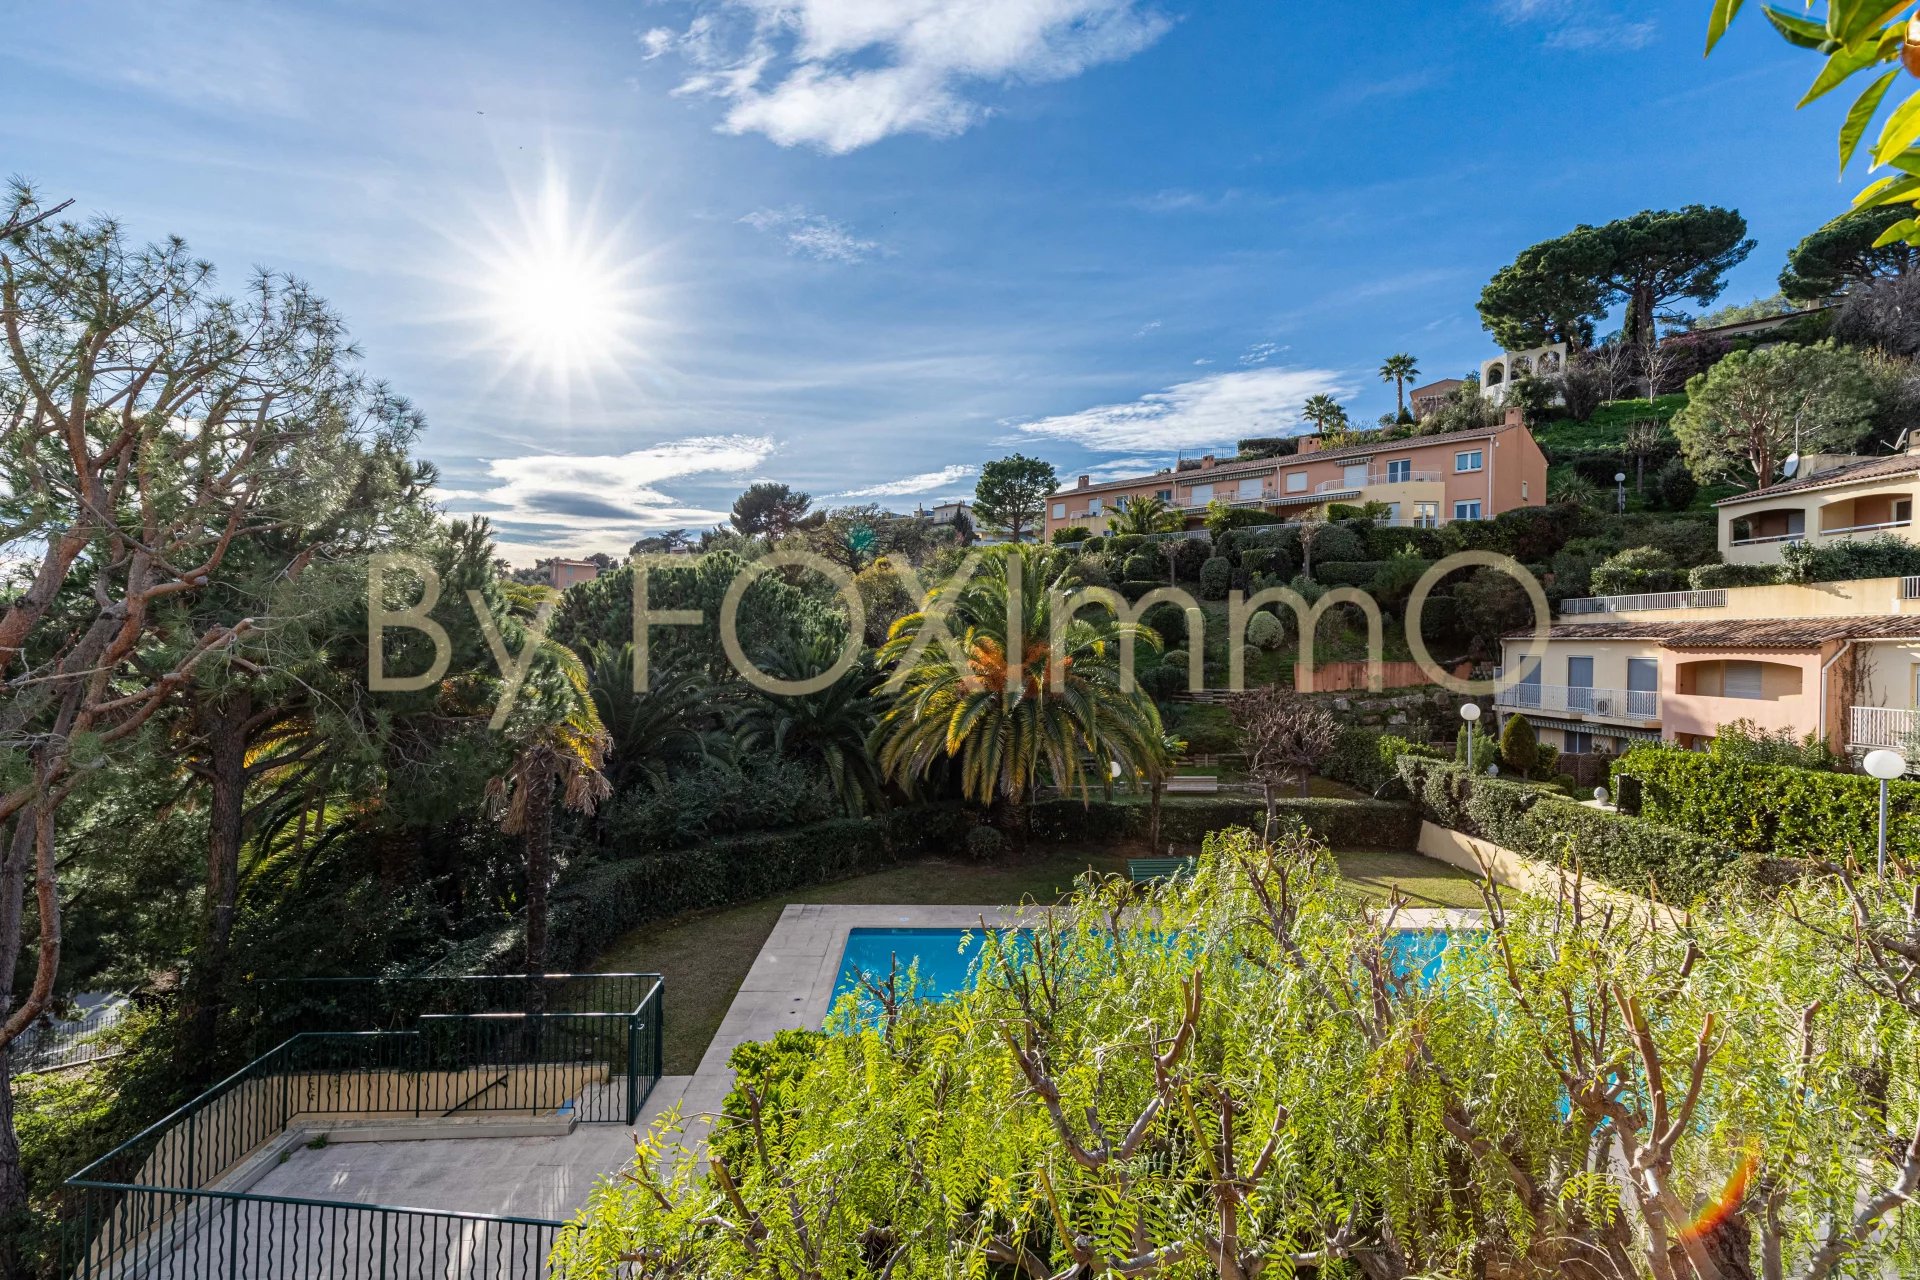 In vendita in Costa Azzurra, magnifico appartamento duplex di 3 locali con garage e piscina